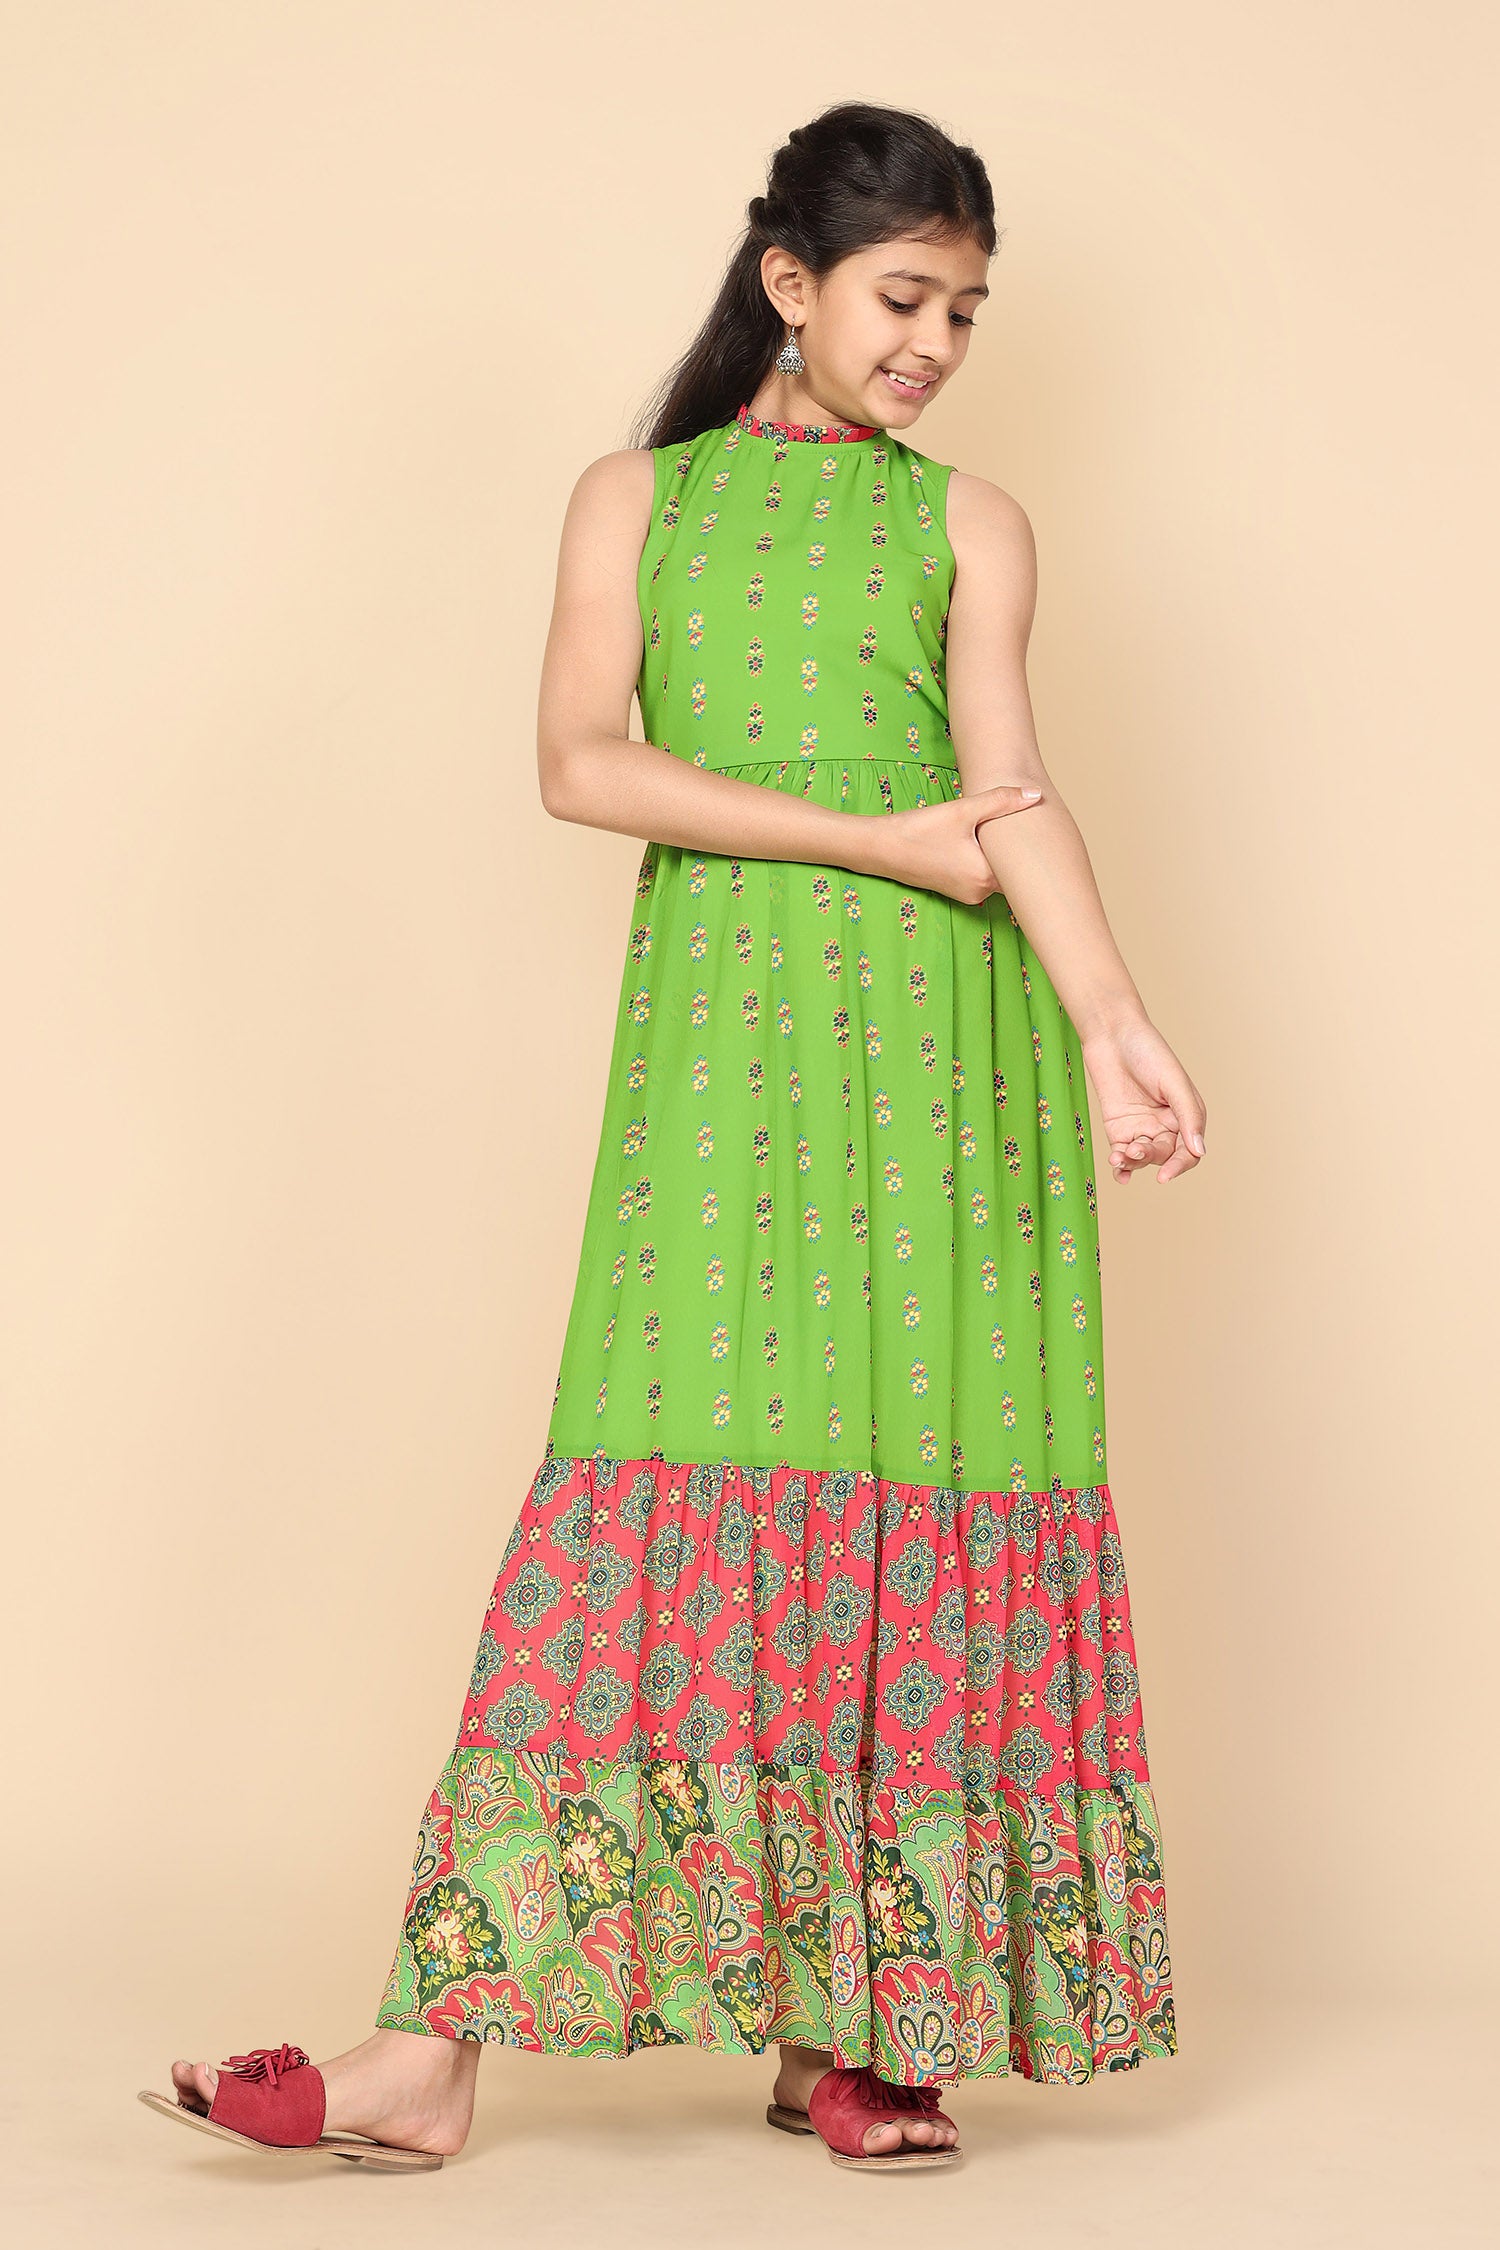 The Leady Designer Girls Maxi/Full Length Festive/Wedding Dress Price in  India - Buy The Leady Designer Girls Maxi/Full Length Festive/Wedding Dress  online at Flipkart.com